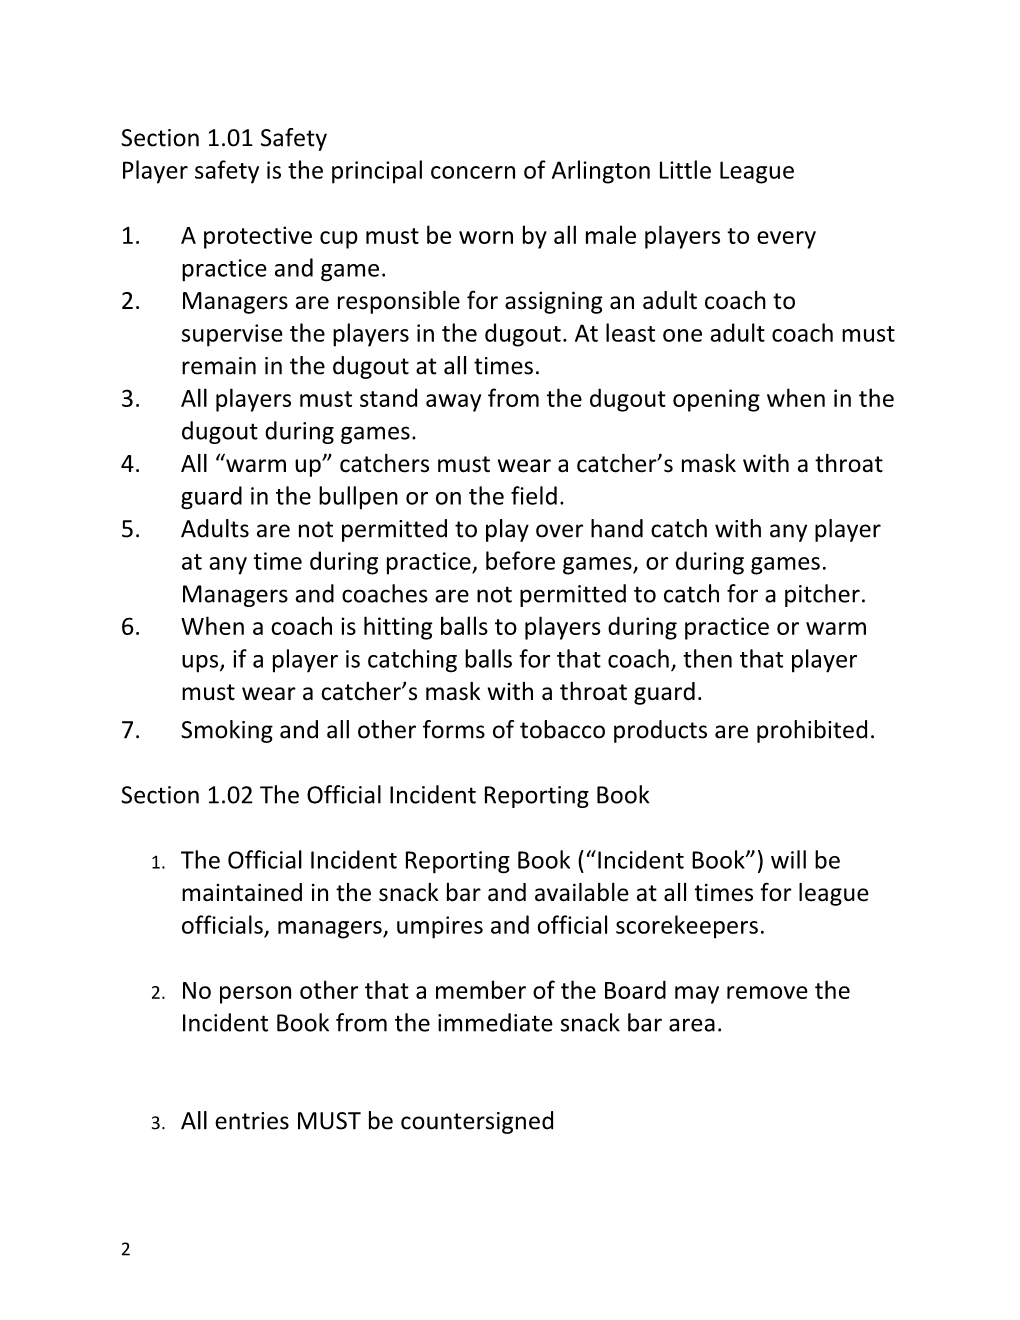 Arlington Little League Bylaws & Ground Rules 2017